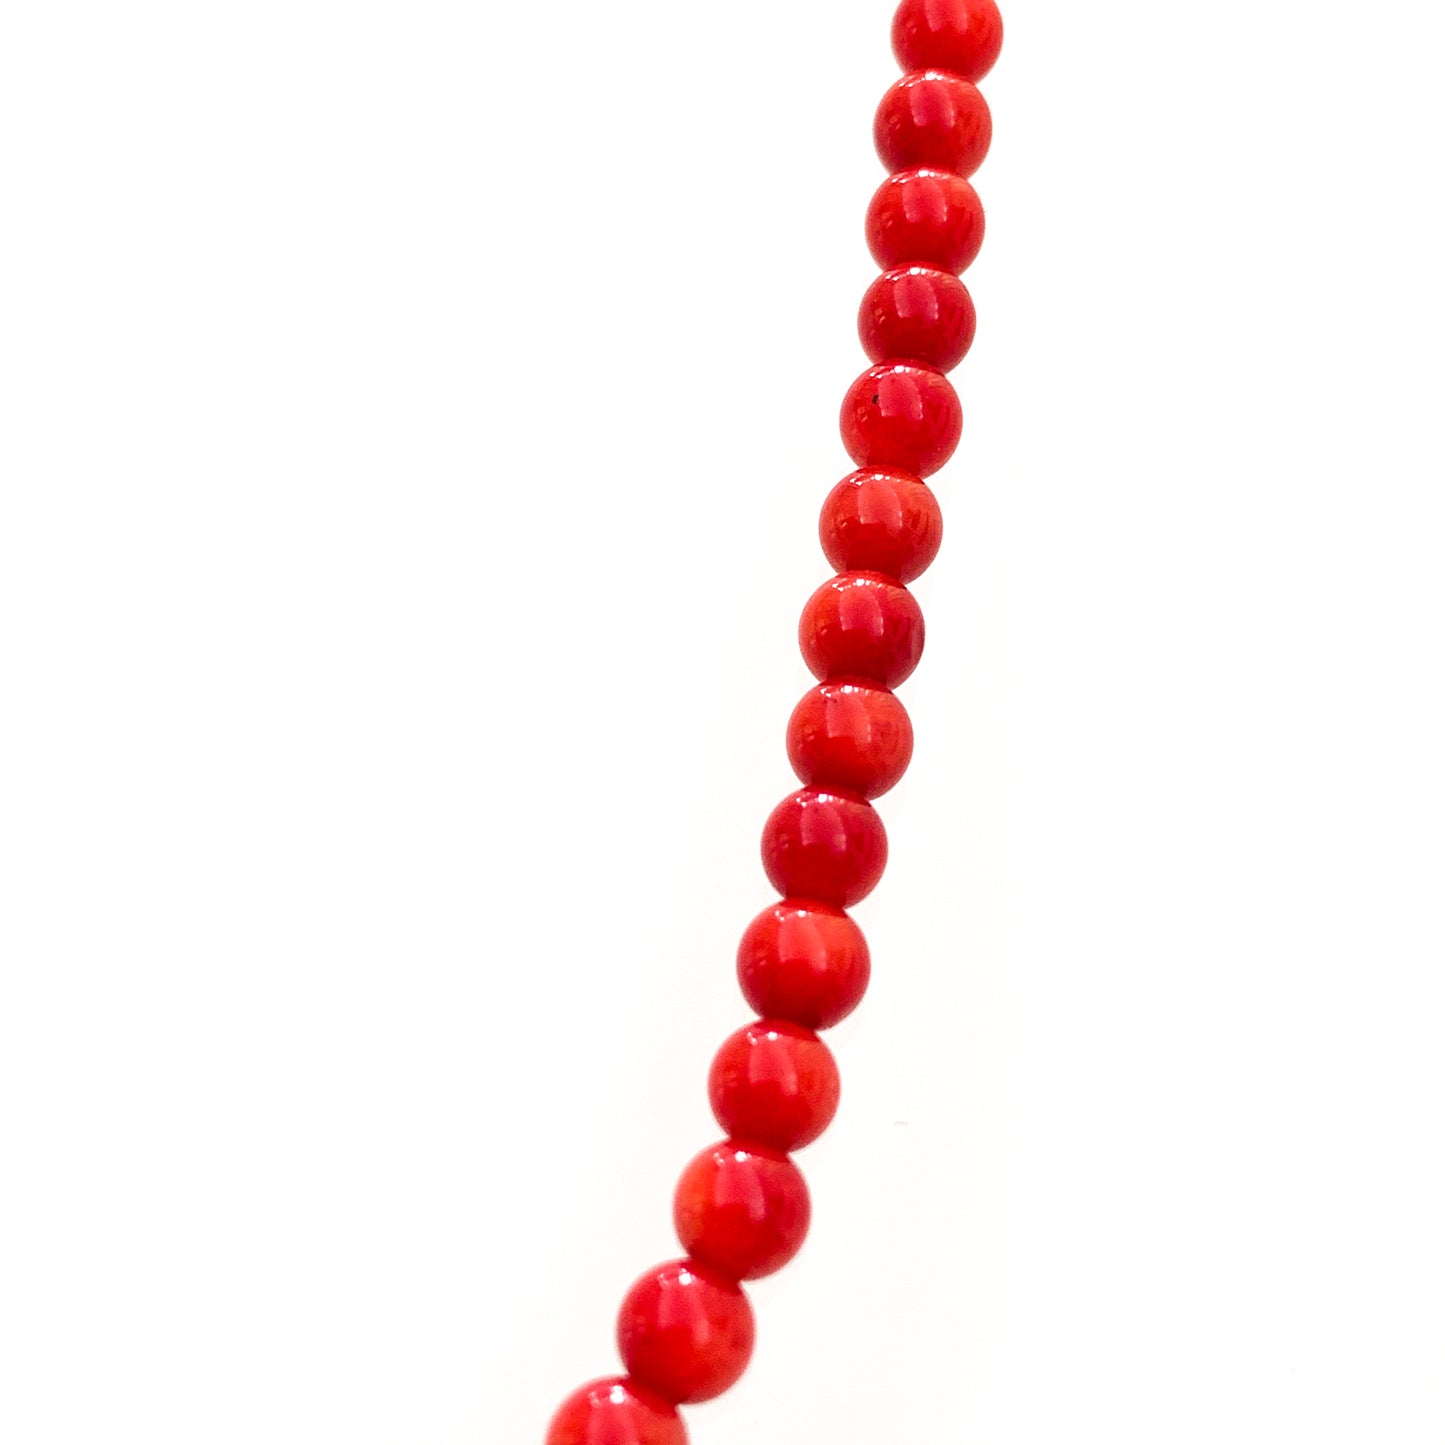 Collana in bijoux con perline color corallo rosso.  Lunghezza catena 52 cm.  Dimensione coralli 0,4 cm.  Spedizione gratuita con confezione regalo. 